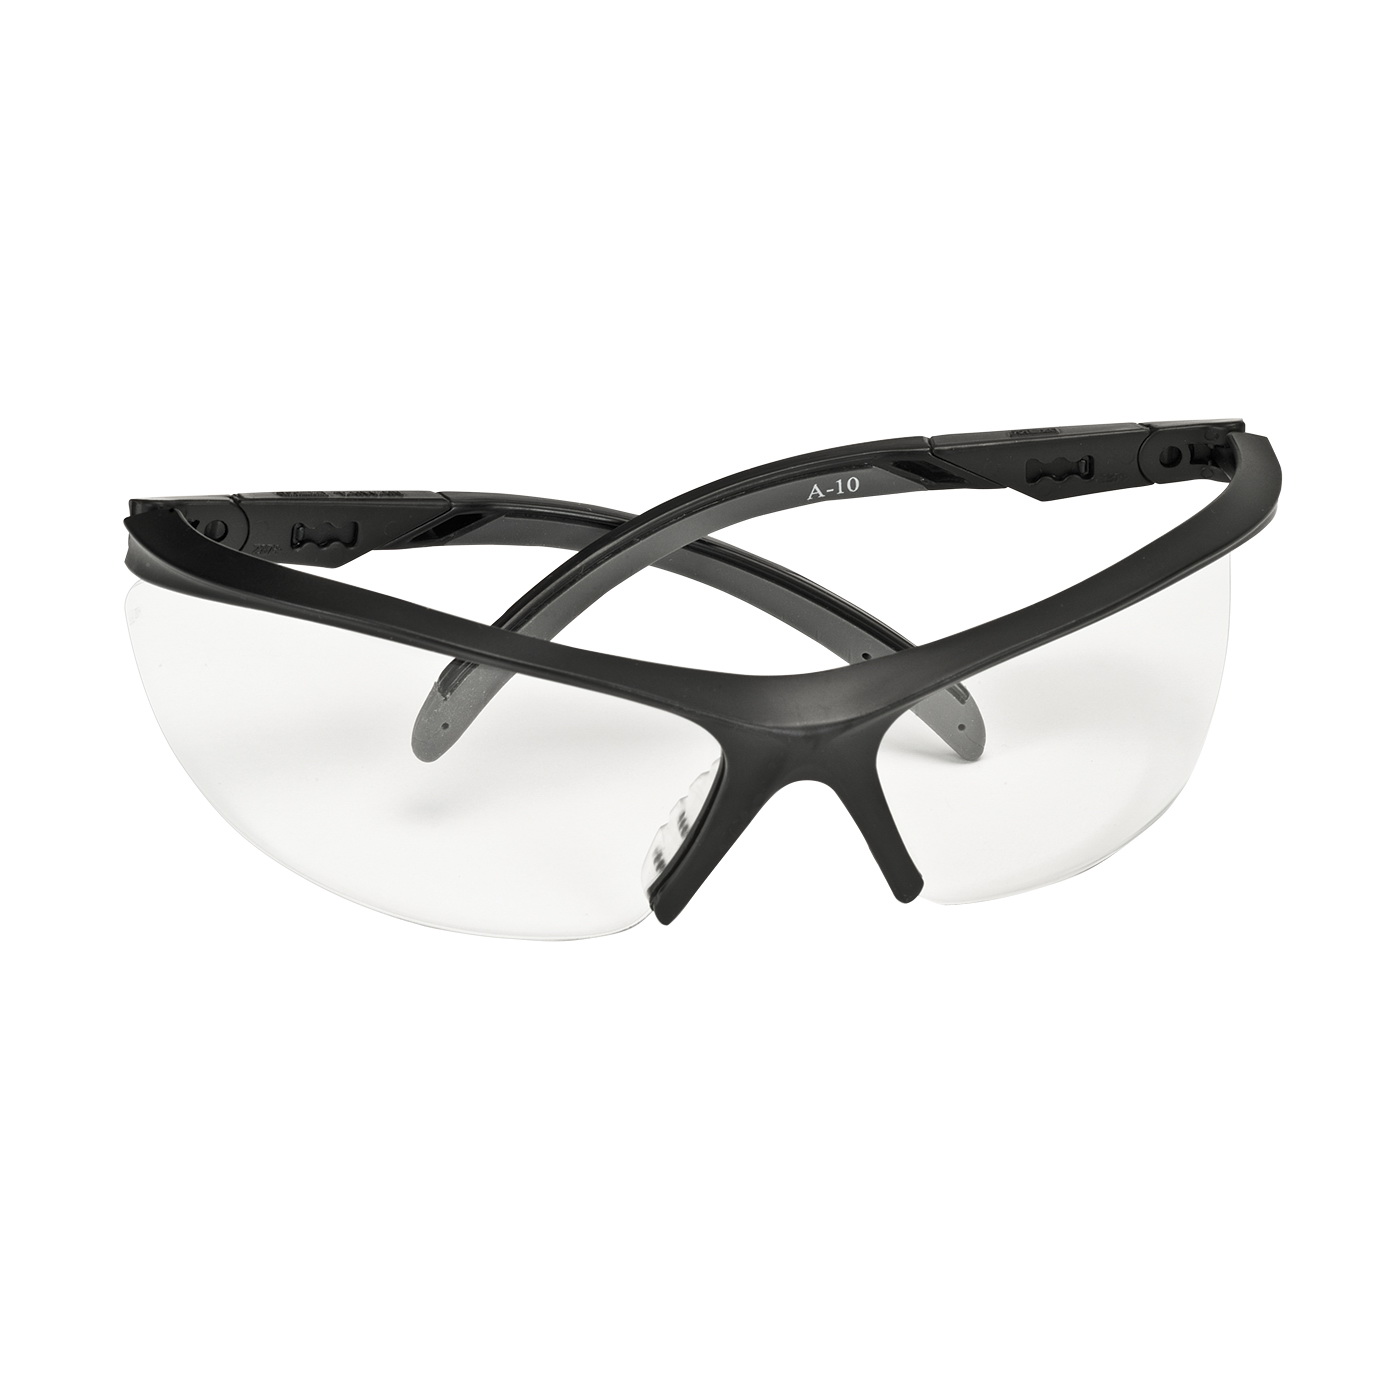 10083064 Essential Safety Glasses, Anti-Fog Lens, Semi-Rimless Frame, Black Frame